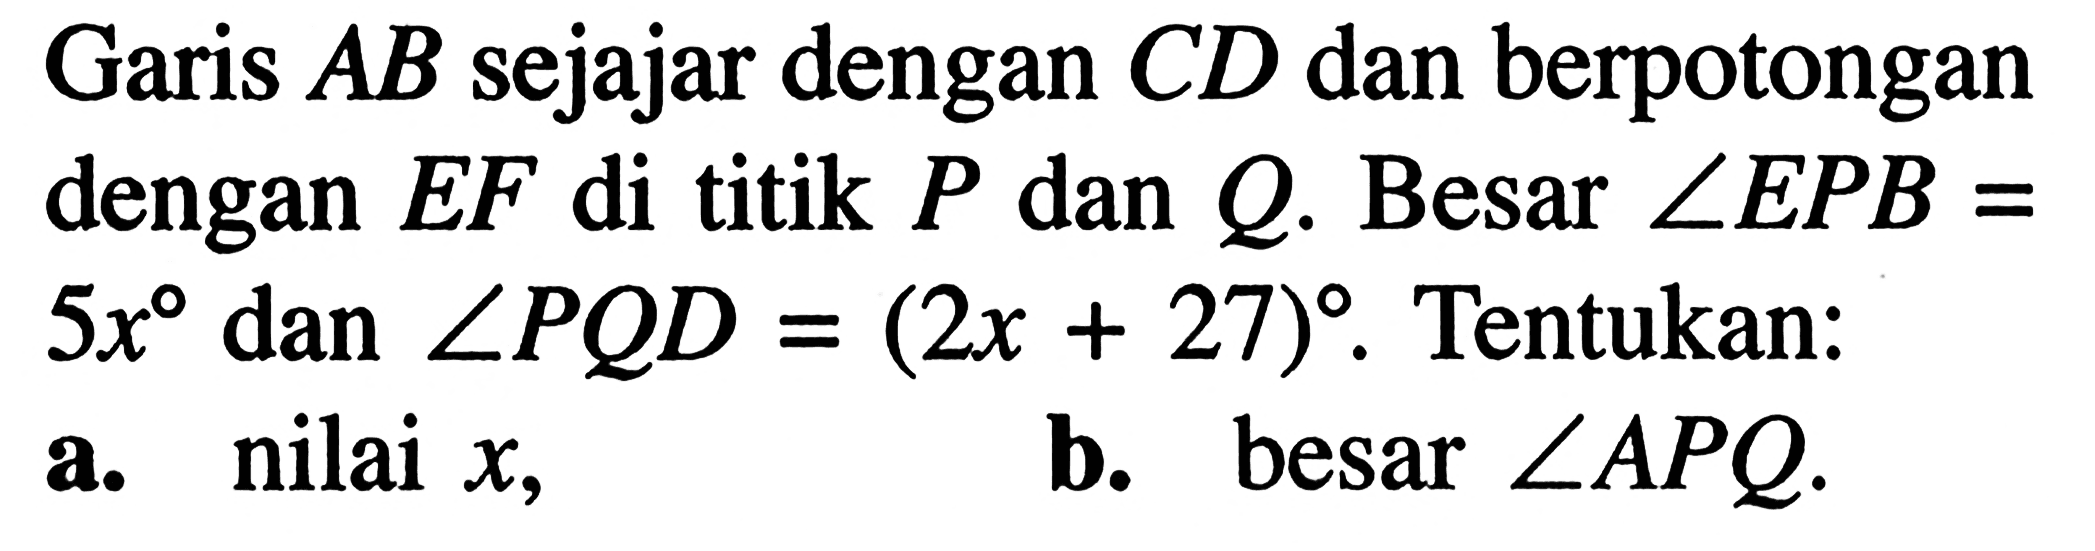 Garis AB sejajar dengan CD dan berpotongan dengan EF di titik P dan Q. Besar sudut EPB=5x dan sudut PQD=(2x+27. Tentukan: a. nilai x, b. besar sudut APQ.